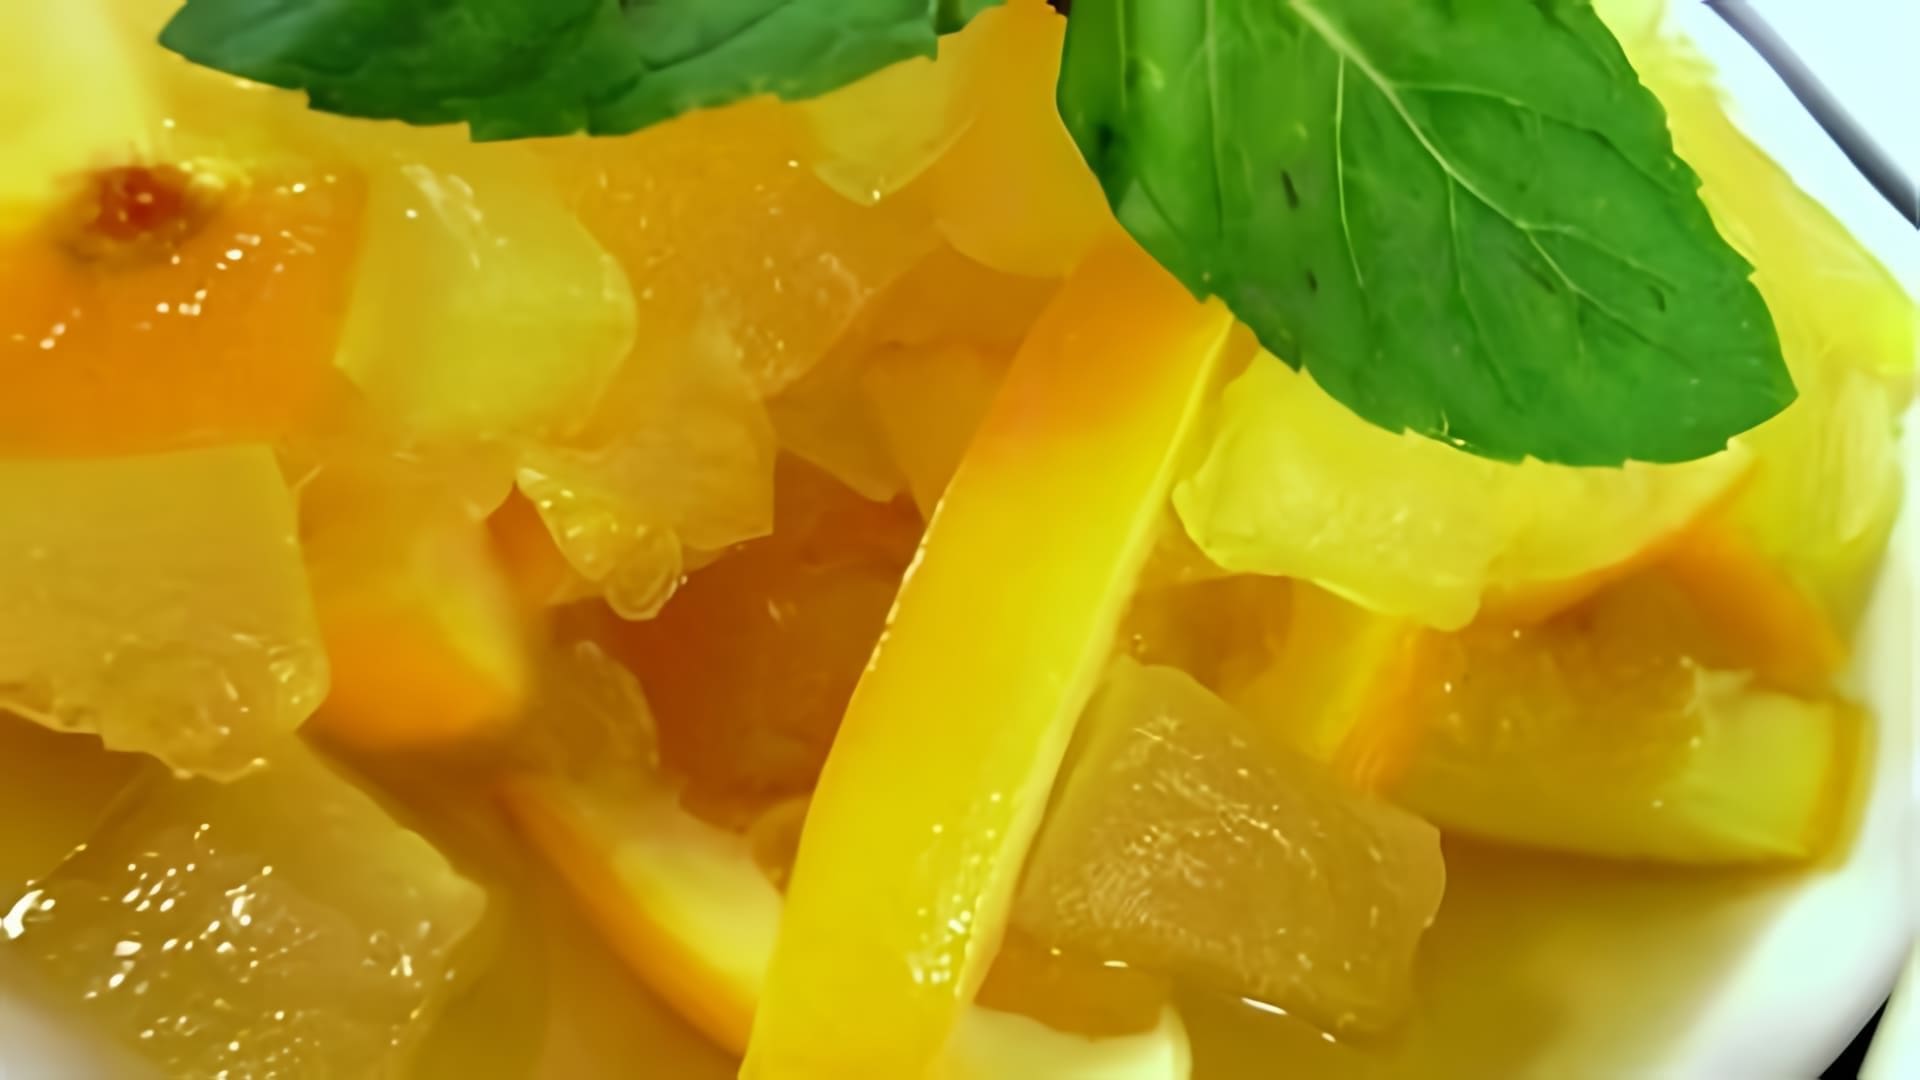 В этом видео демонстрируется простой рецепт заготовки кабачков на зиму, которые получаются похожими на ананасы